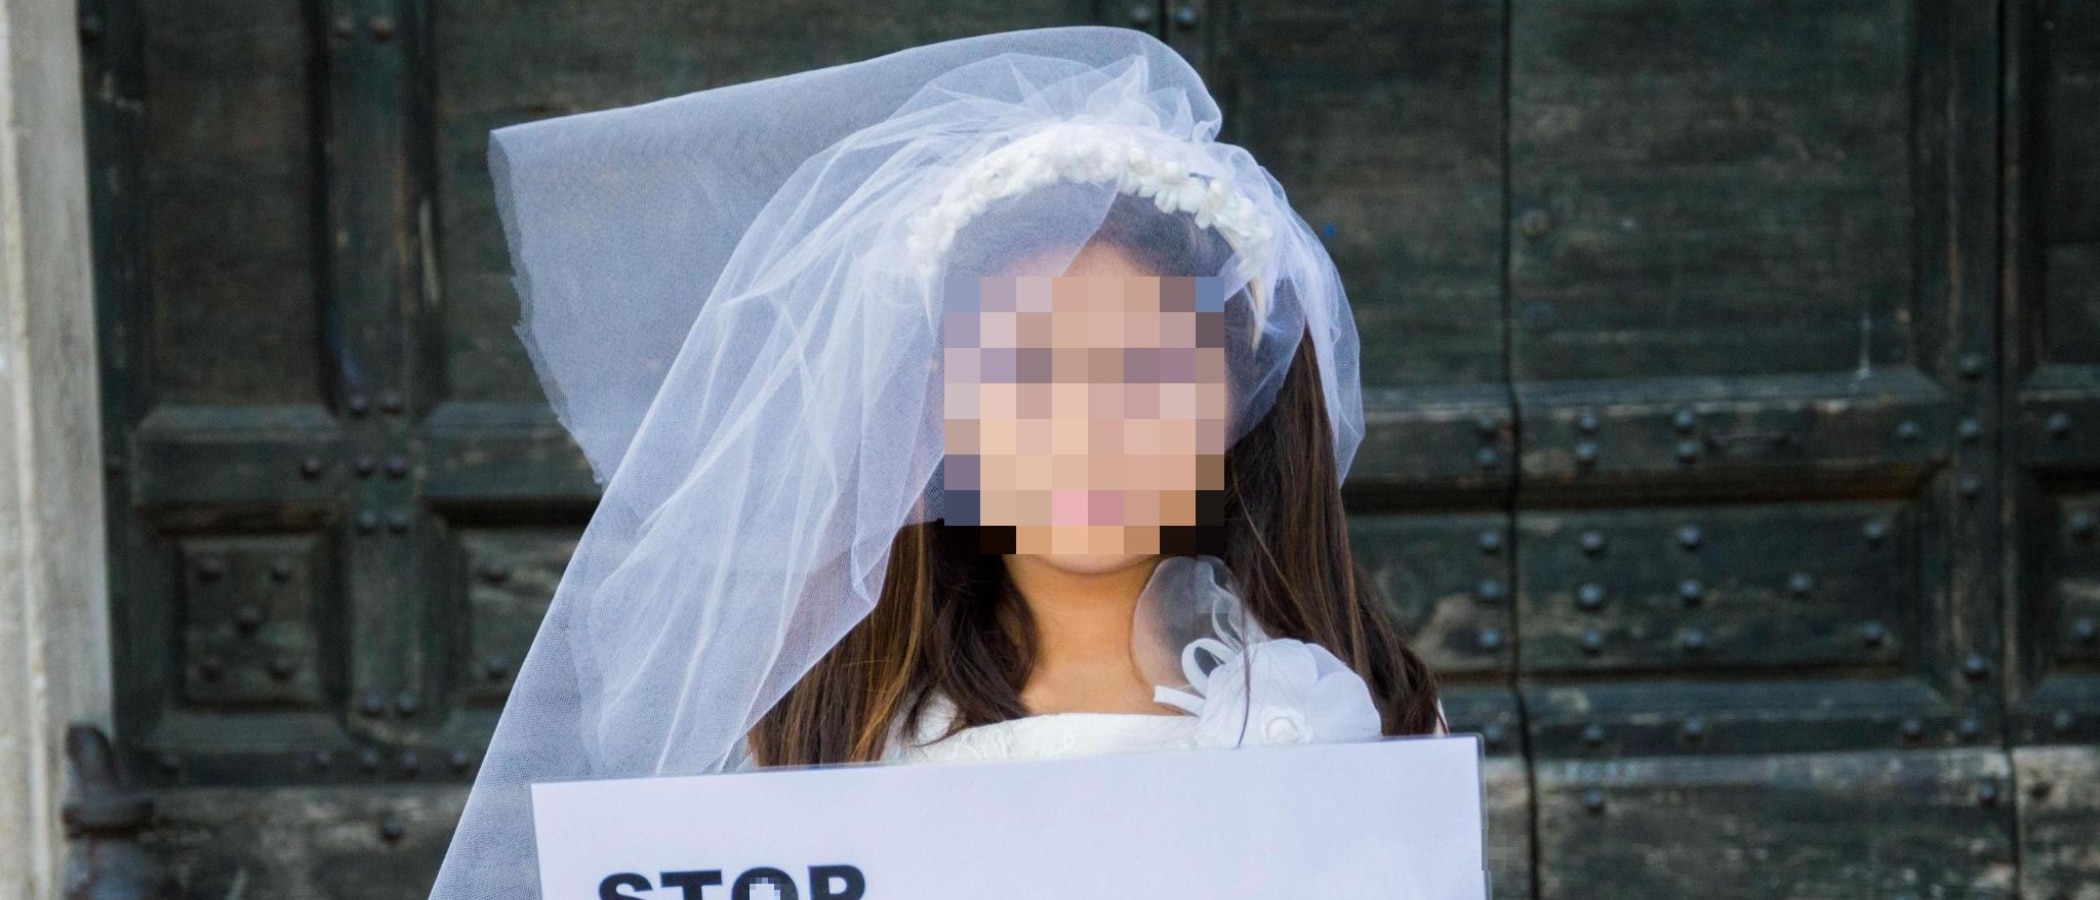 Turchia, bimba data in sposa a 6 anni: il caso scuote il Paese